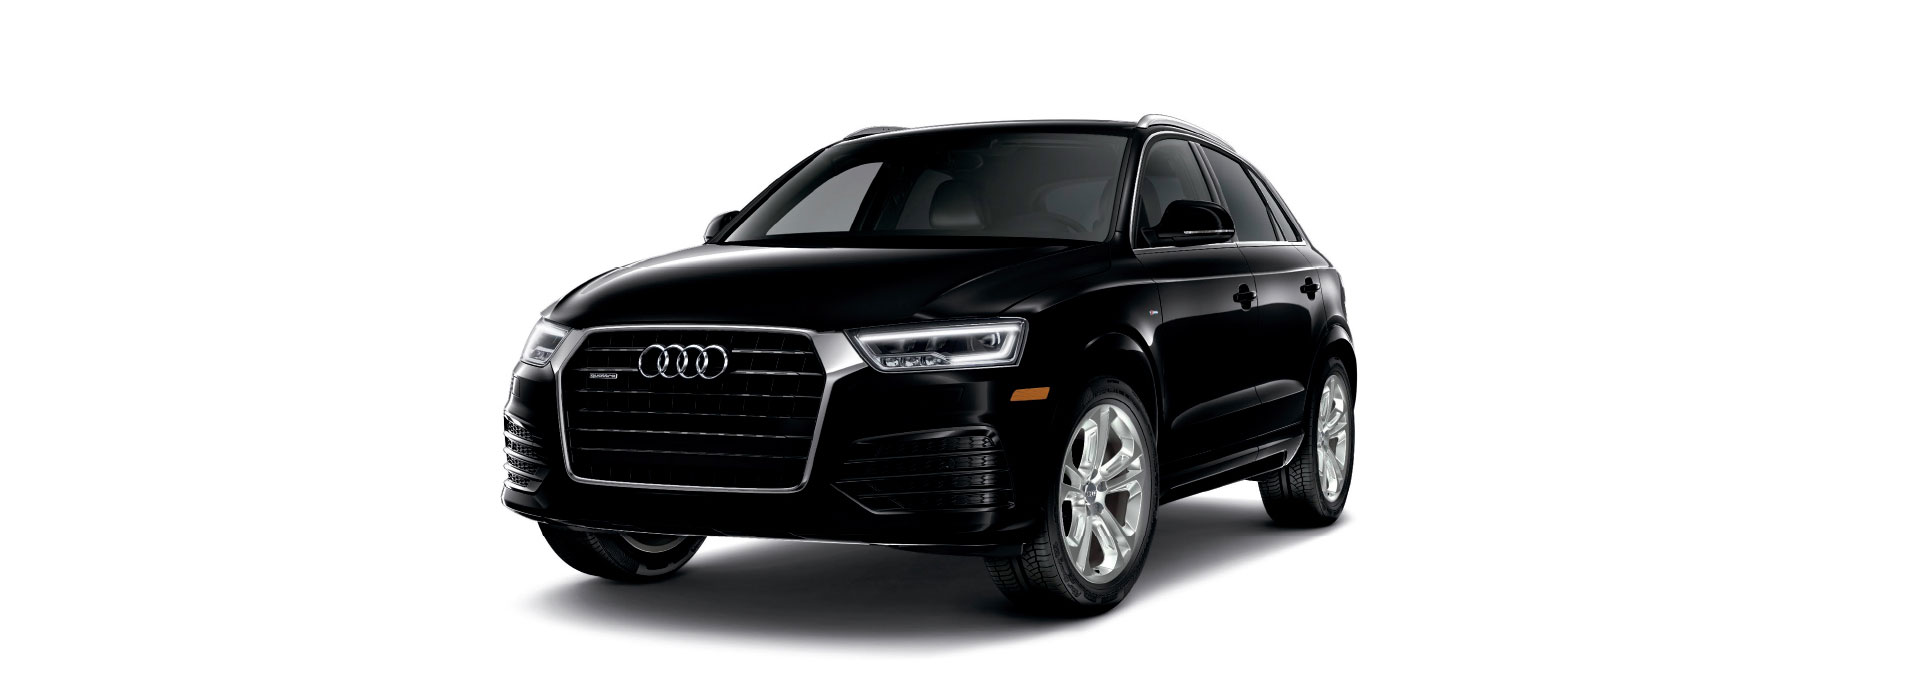 Audi Q3 Mythos Black metallic